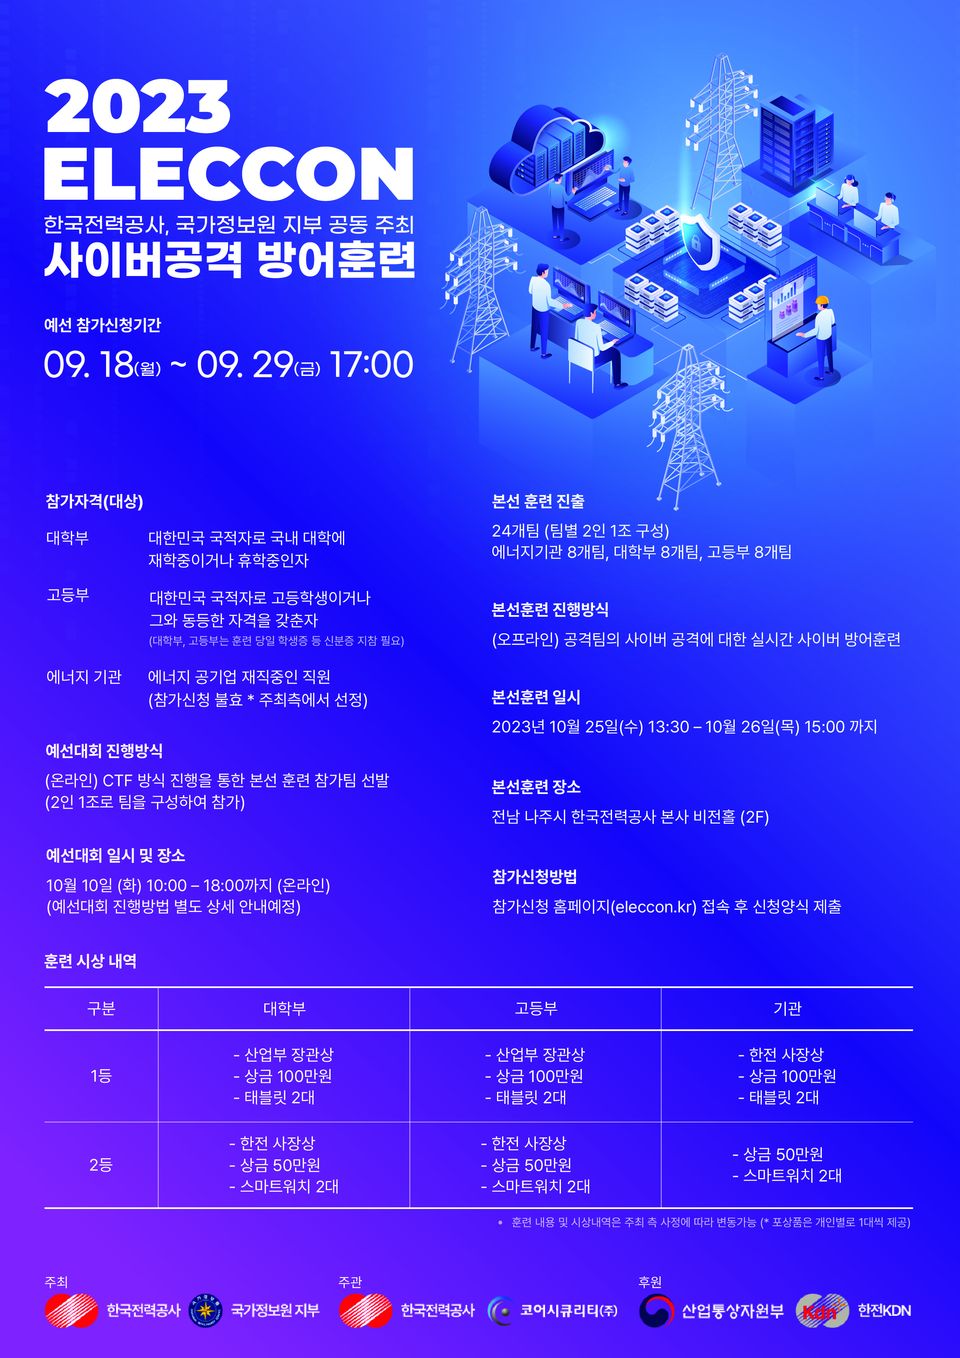 한국전력공사는 9월 18일부터 29일까지 ‘실전형 사이버공격 방어훈련(ELECCON 2023, 이하 일렉콘)’ 참가자를 온라인으로 모집한다.